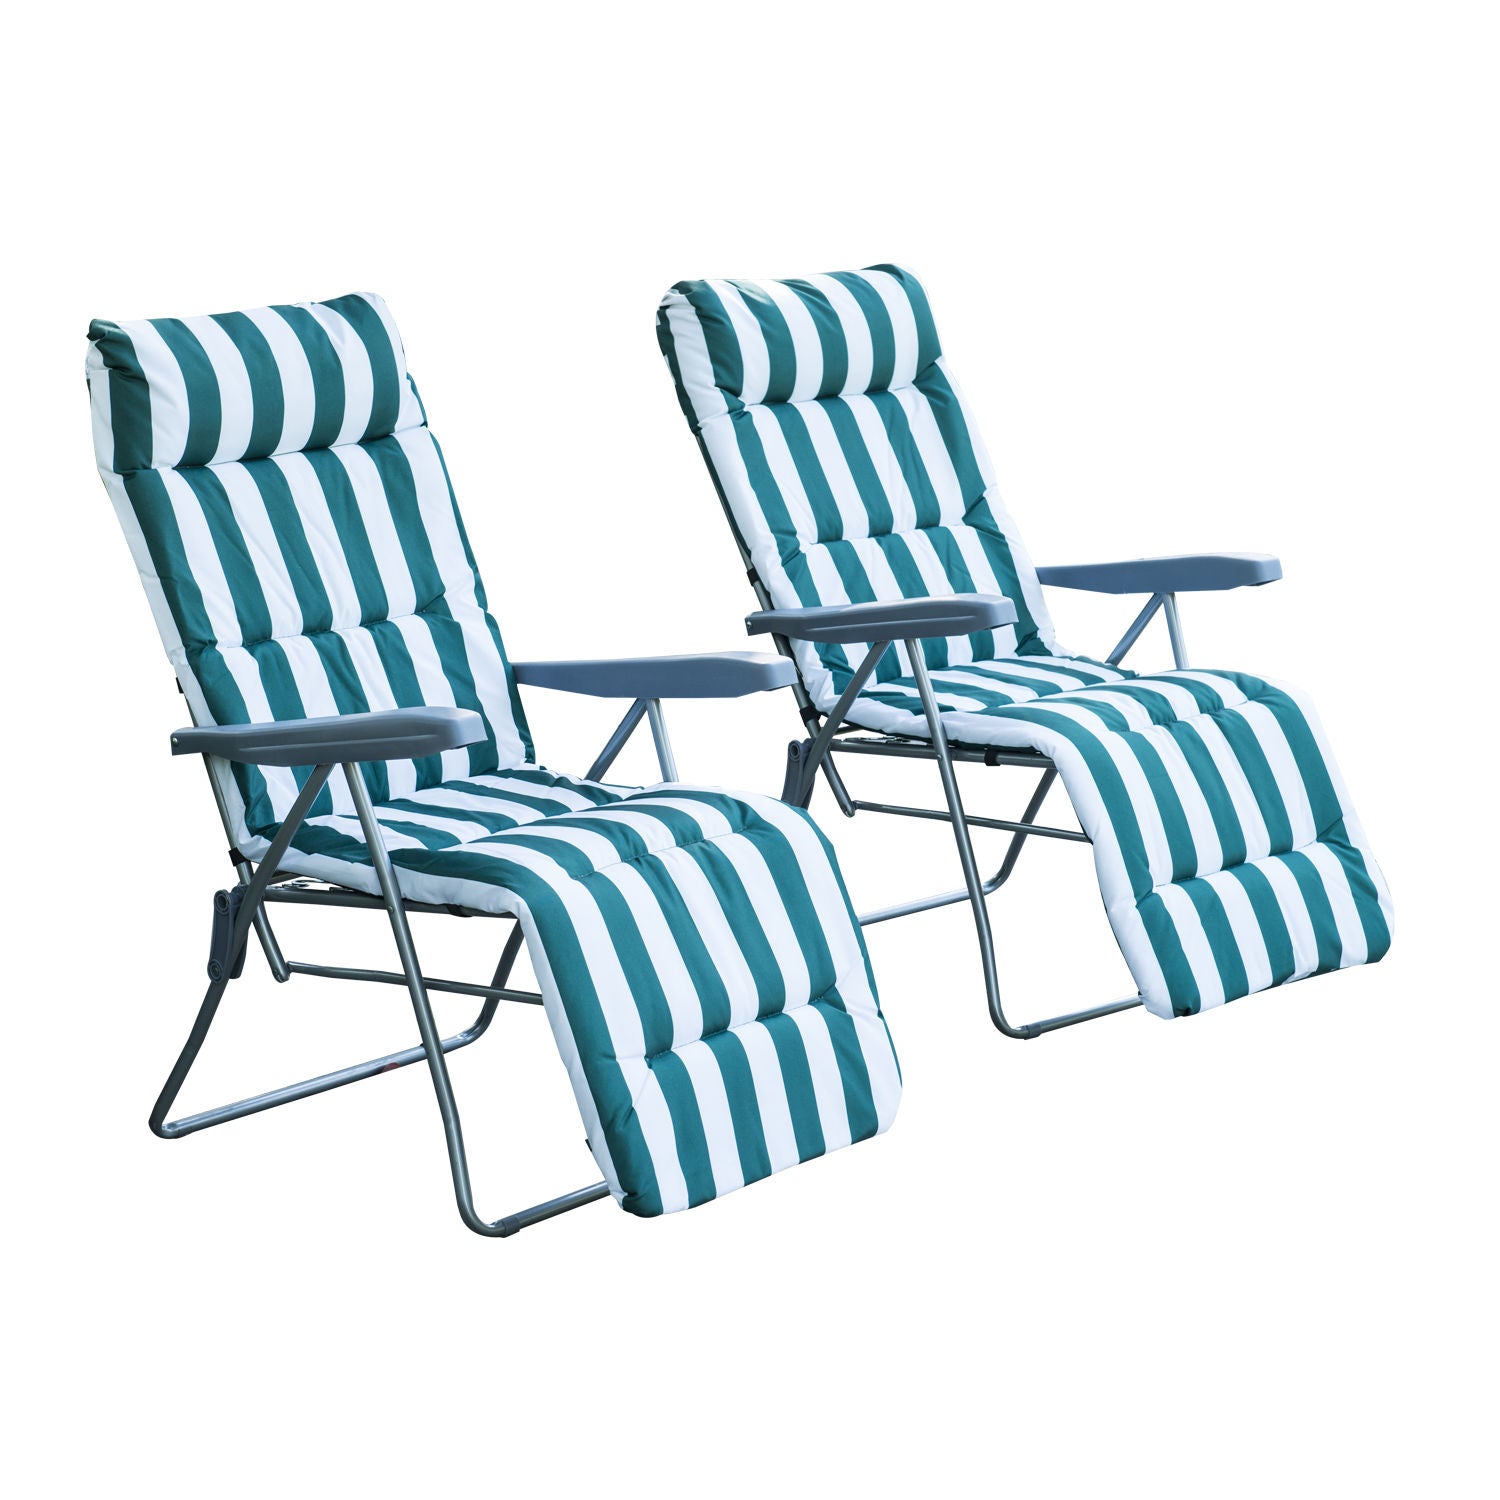 Chaises de jardin Nancy's Cary - Chaise longue - Lot de 2 - Pliable - 5 positions - Réglable - Vert - Blanc - 60 x 75 x 104 cm